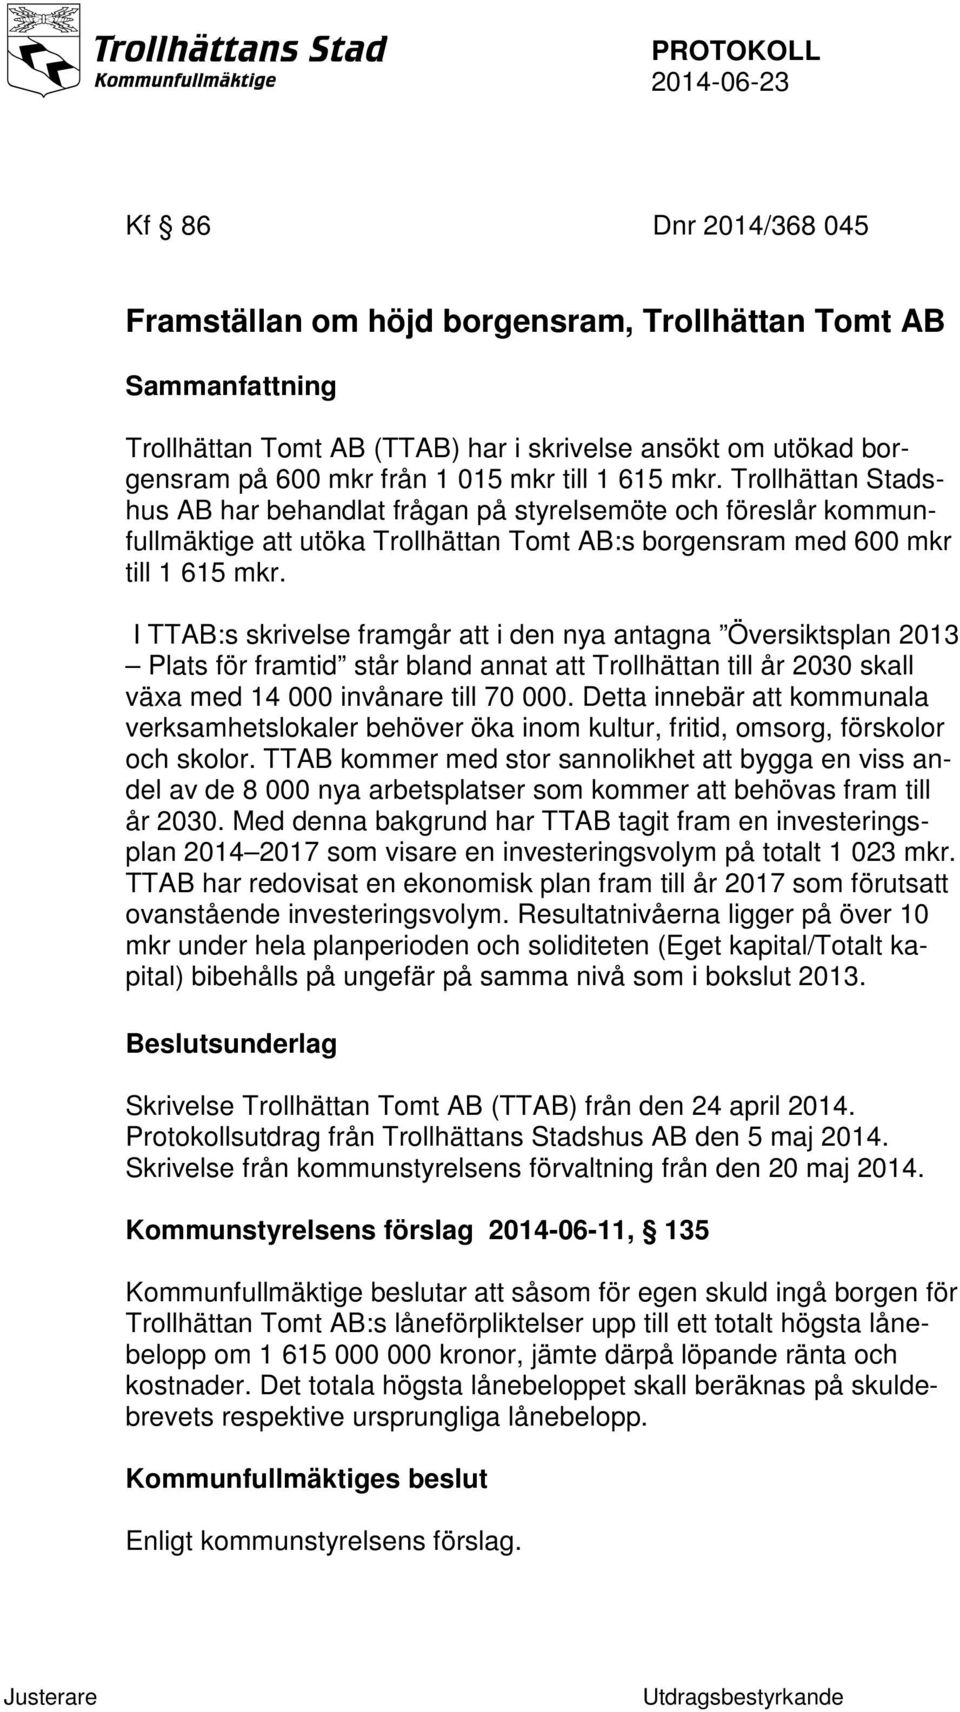 I TTAB:s skrivelse framgår att i den nya antagna Översiktsplan 2013 Plats för framtid står bland annat att Trollhättan till år 2030 skall växa med 14 000 invånare till 70 000.